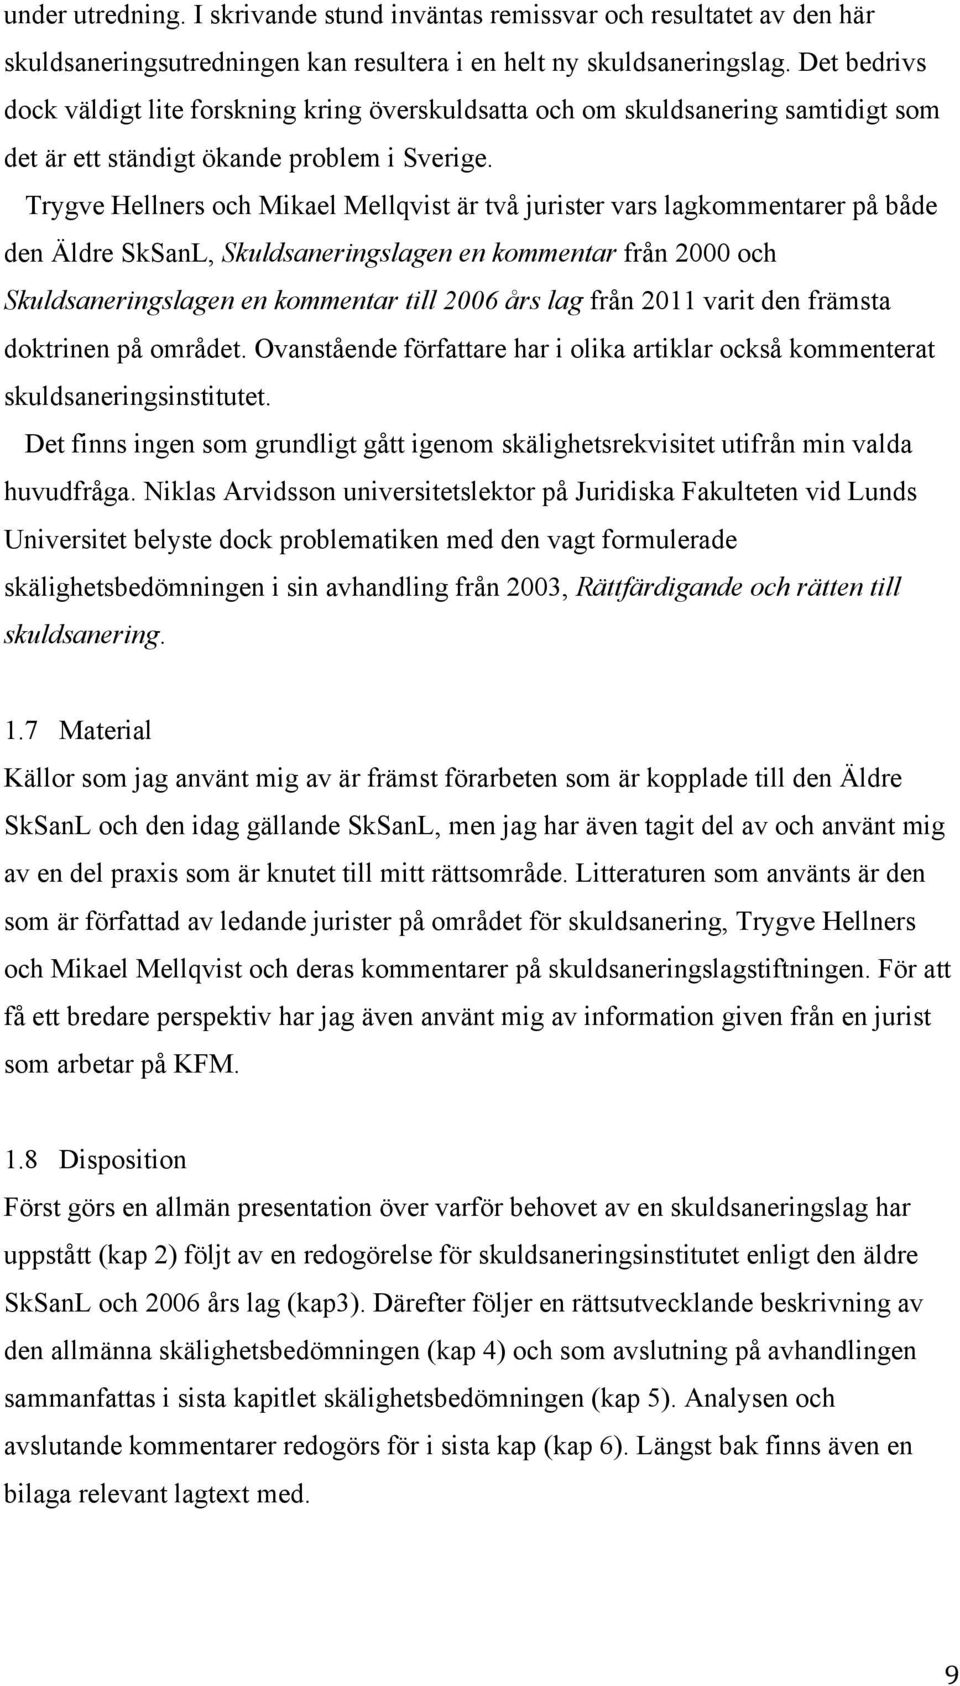 Trygve Hellners och Mikael Mellqvist är två jurister vars lagkommentarer på både den Äldre SkSanL, Skuldsaneringslagen en kommentar från 2000 och Skuldsaneringslagen en kommentar till 2006 års lag